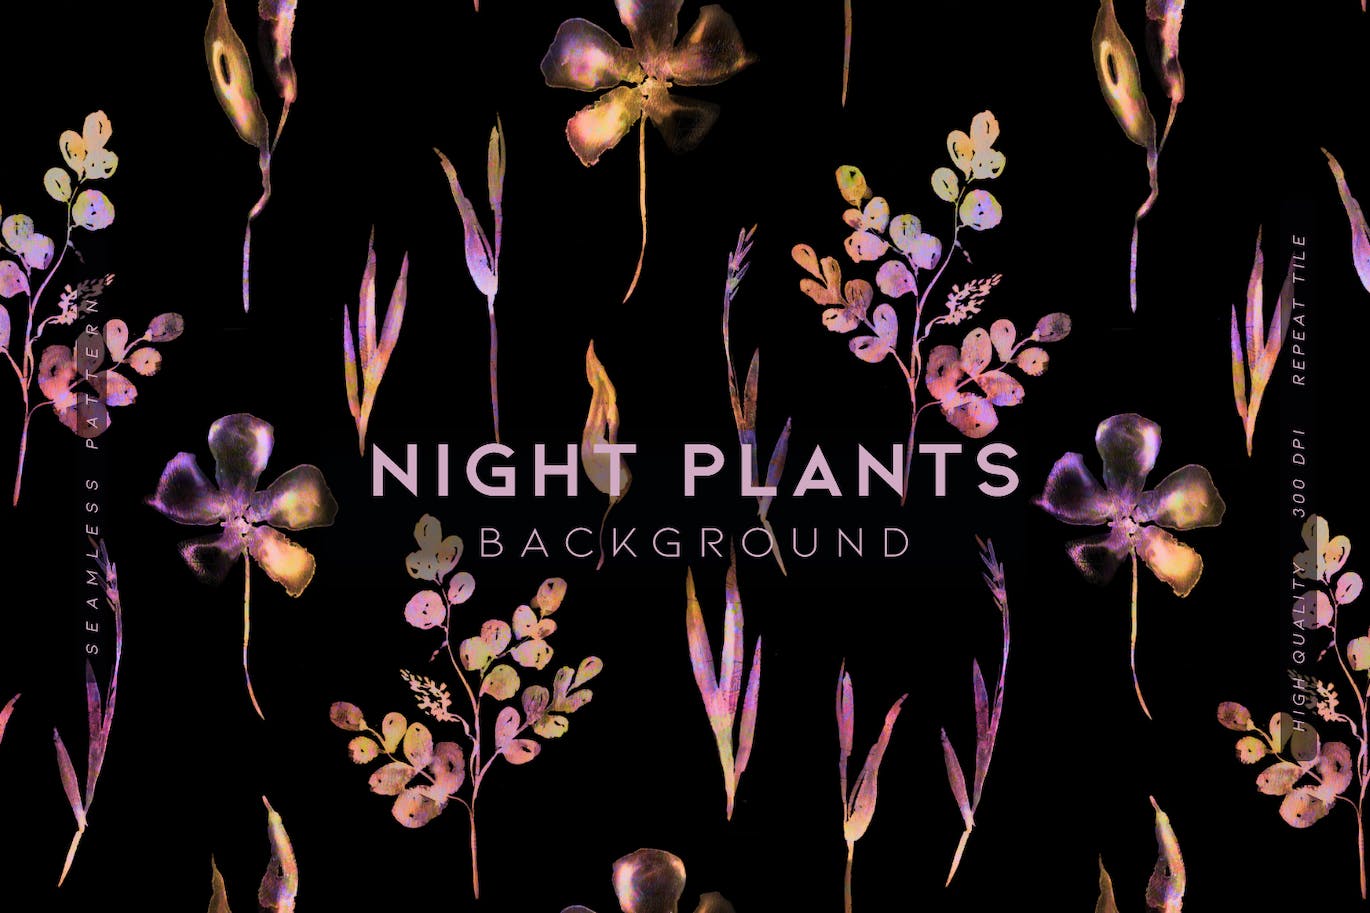 夜间植物图案背景素材 Night Plants 图片素材 第1张